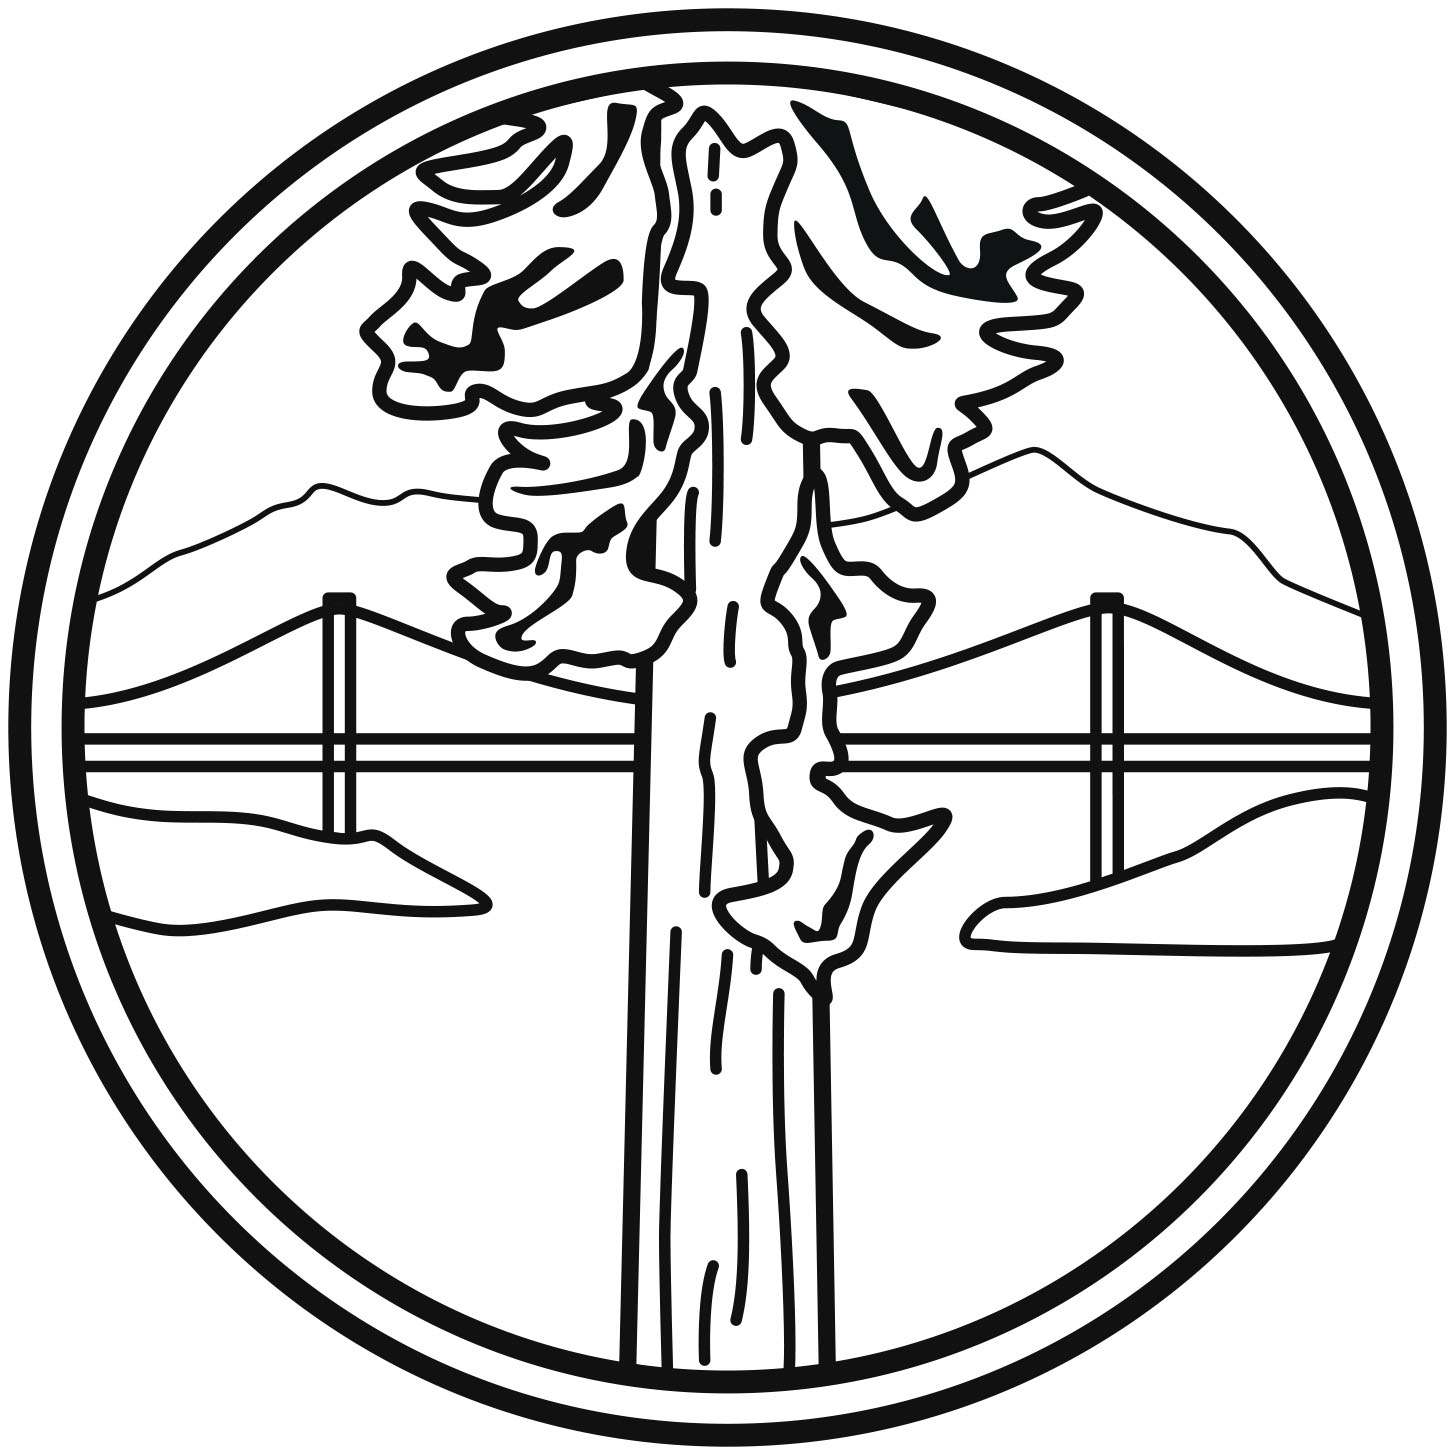 Other California Garden Railway Societies The Redwood Empire